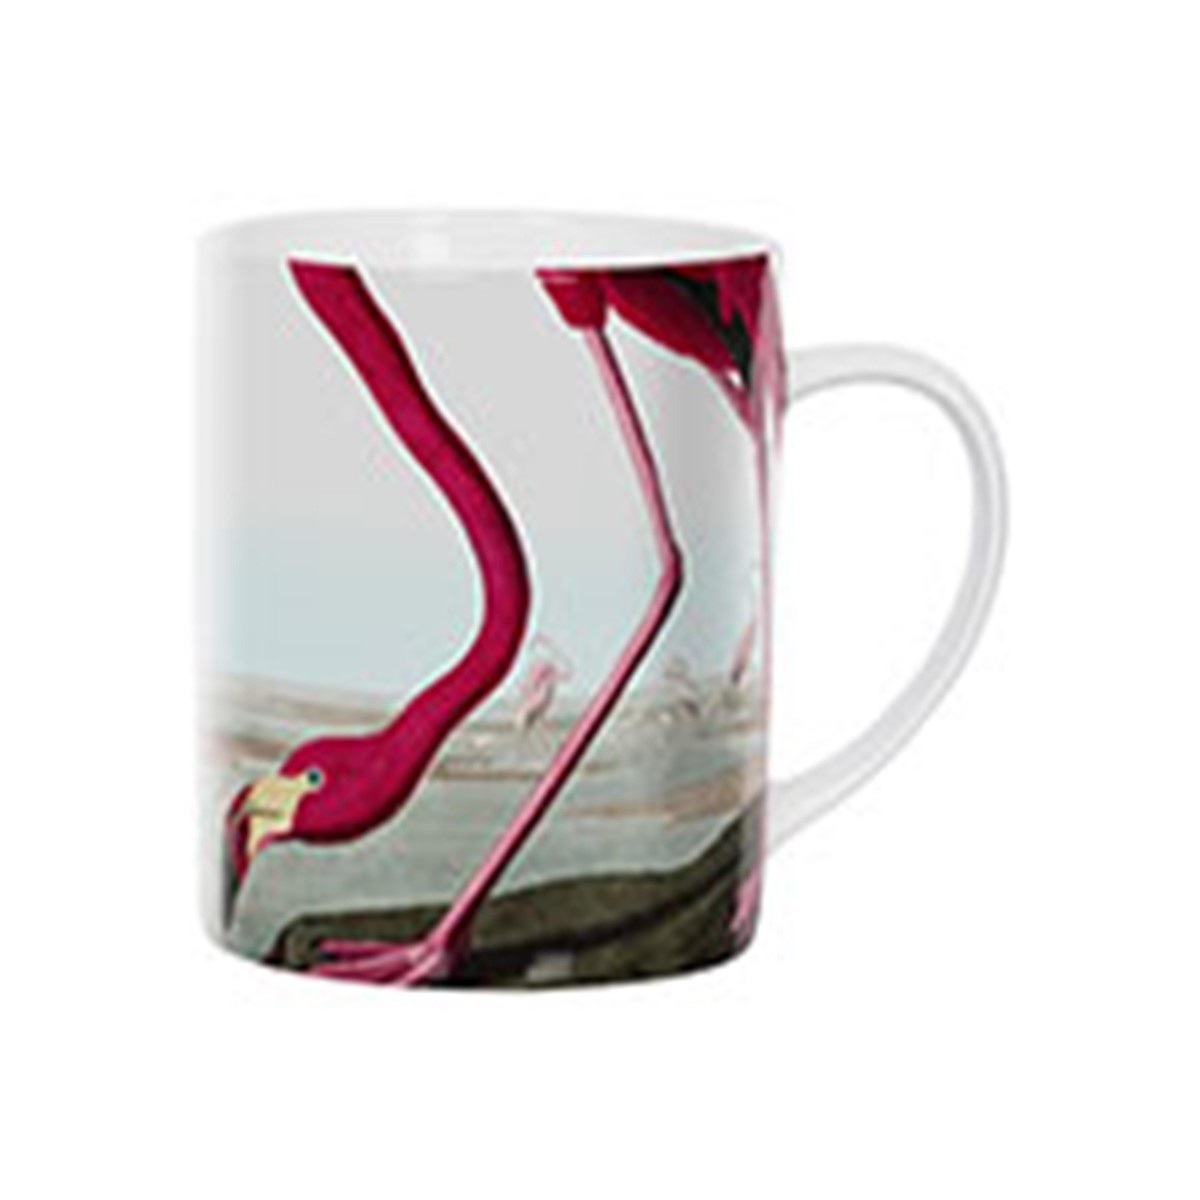   Mug Flamingo  9x8cm